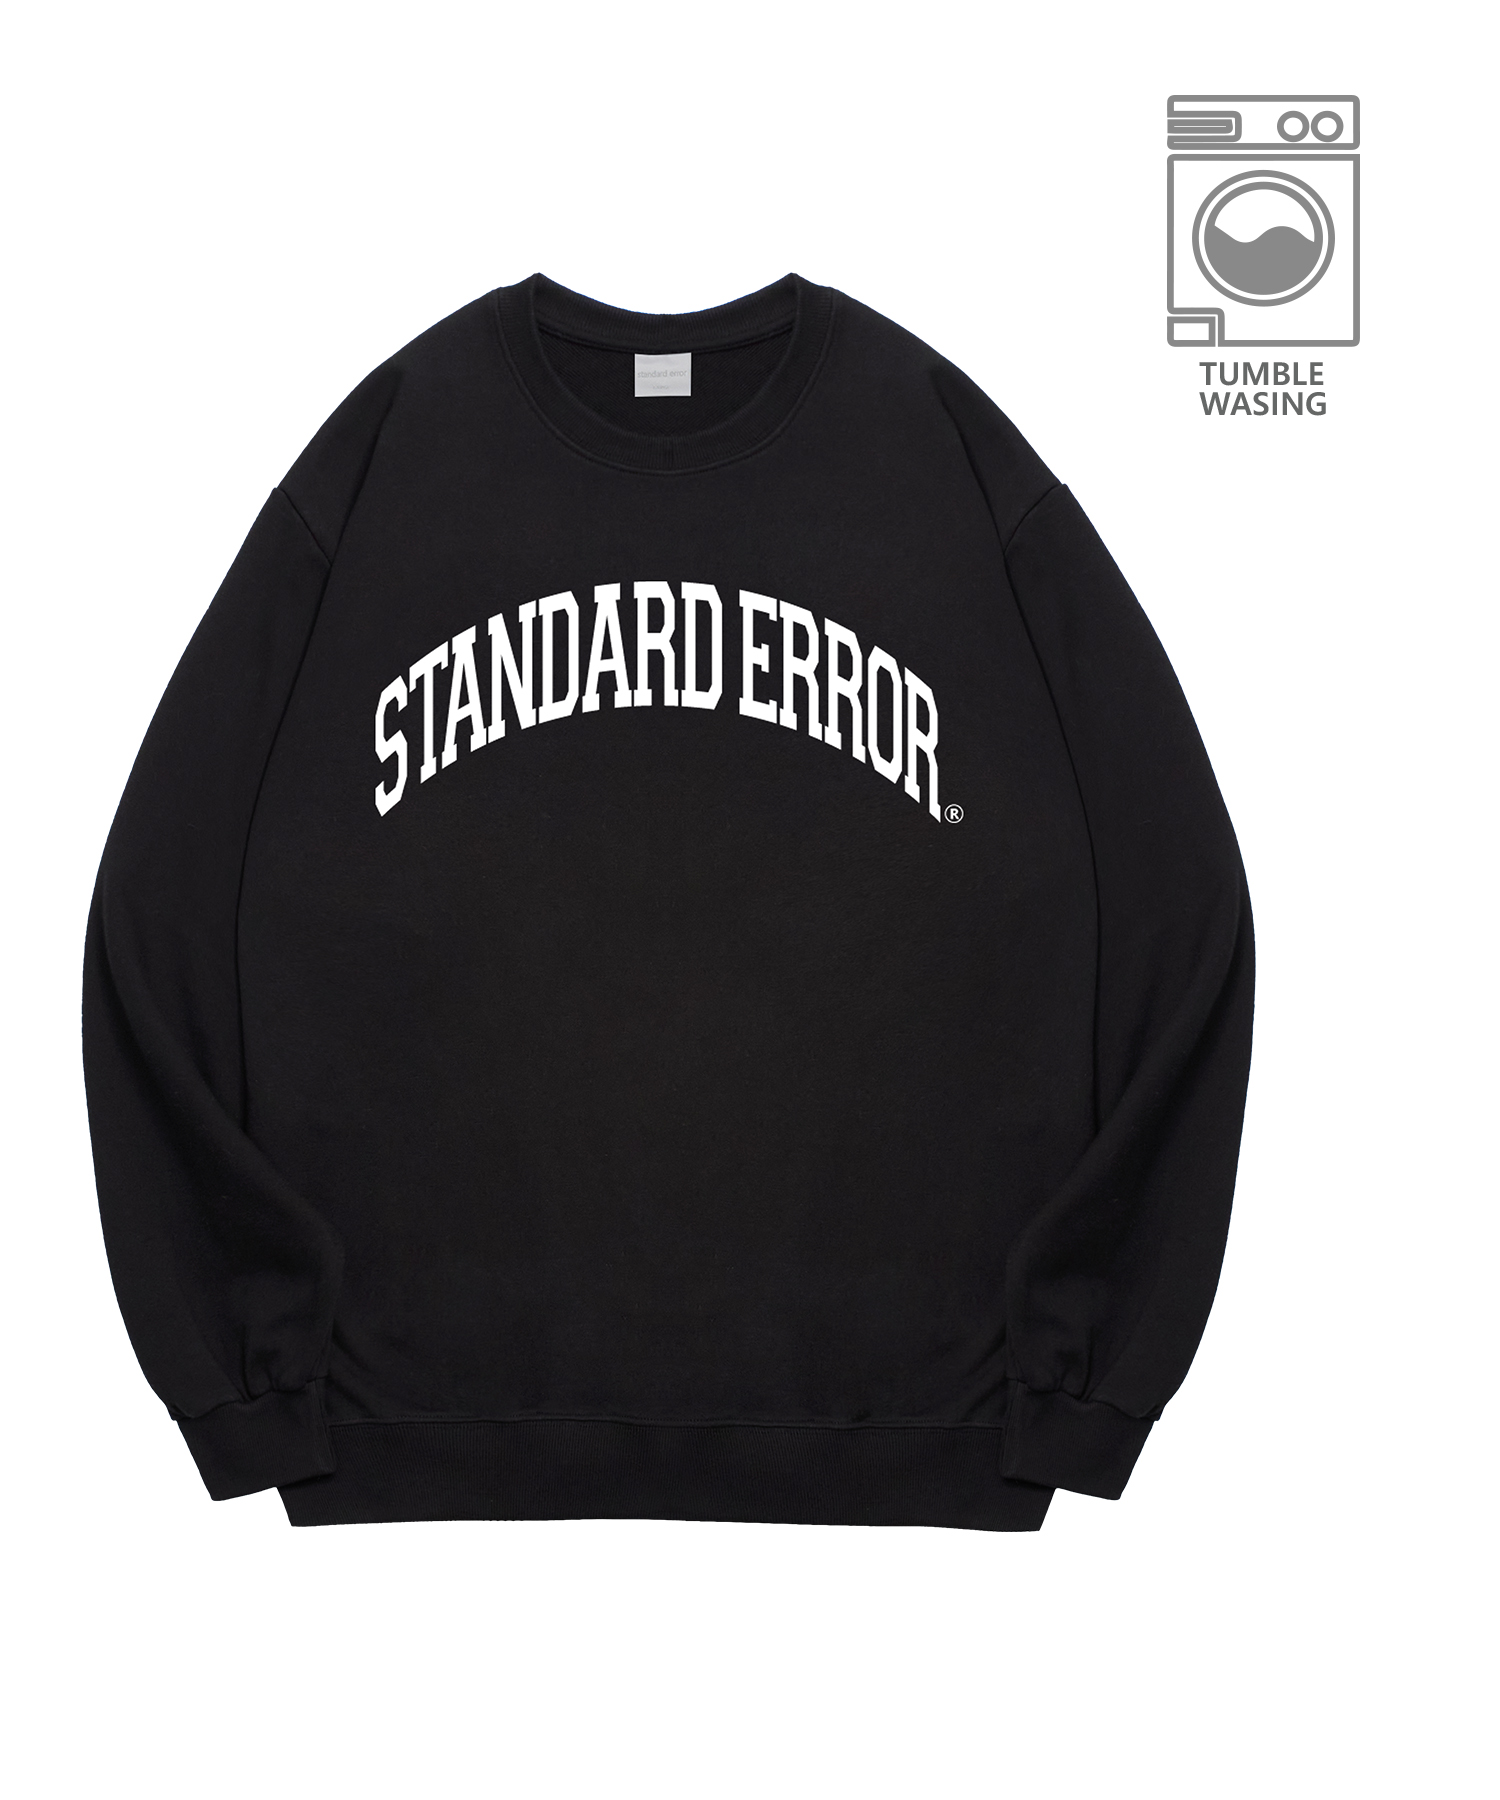 IRT127 Old School Standard Error Logo Arch Lettering Semi-Oversized Fit Sweatshirt Black